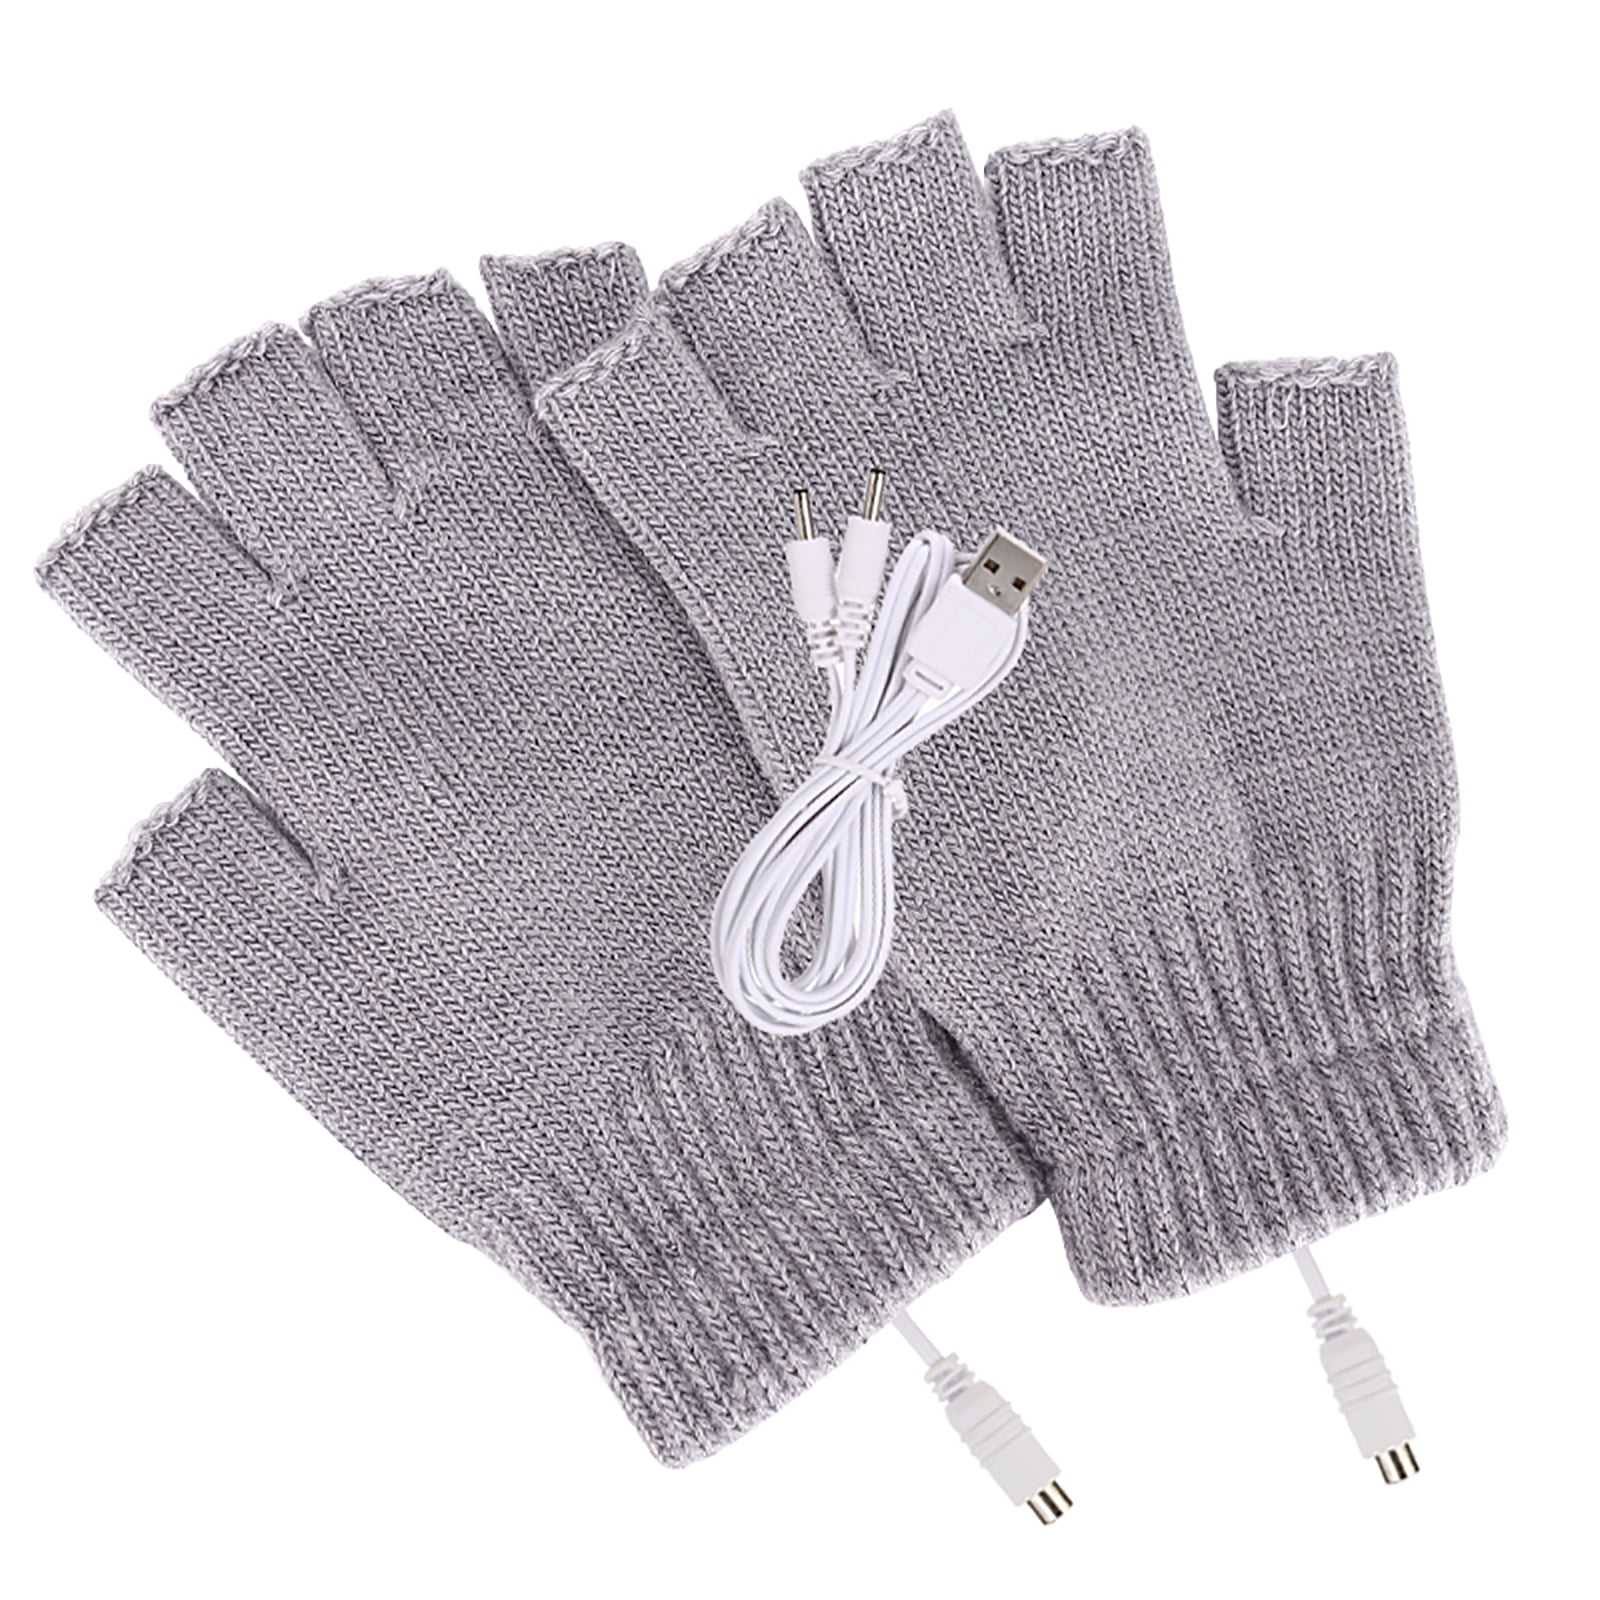 Fingerless Pair USB Heated Warm Gloves for Men Black 